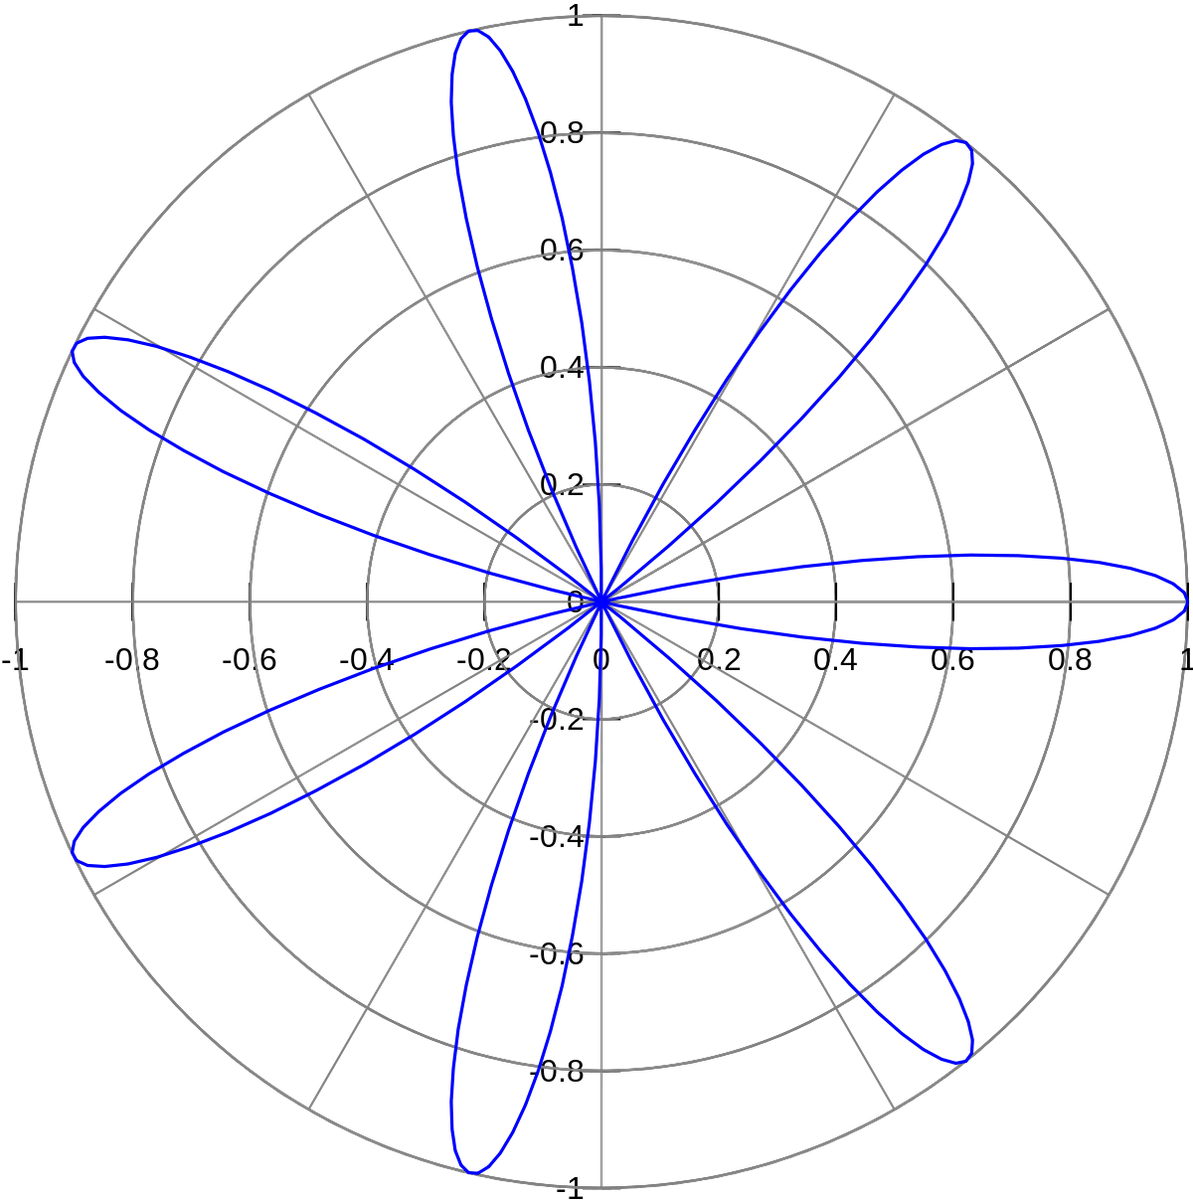 Rose (mathematics) - Wikipedia